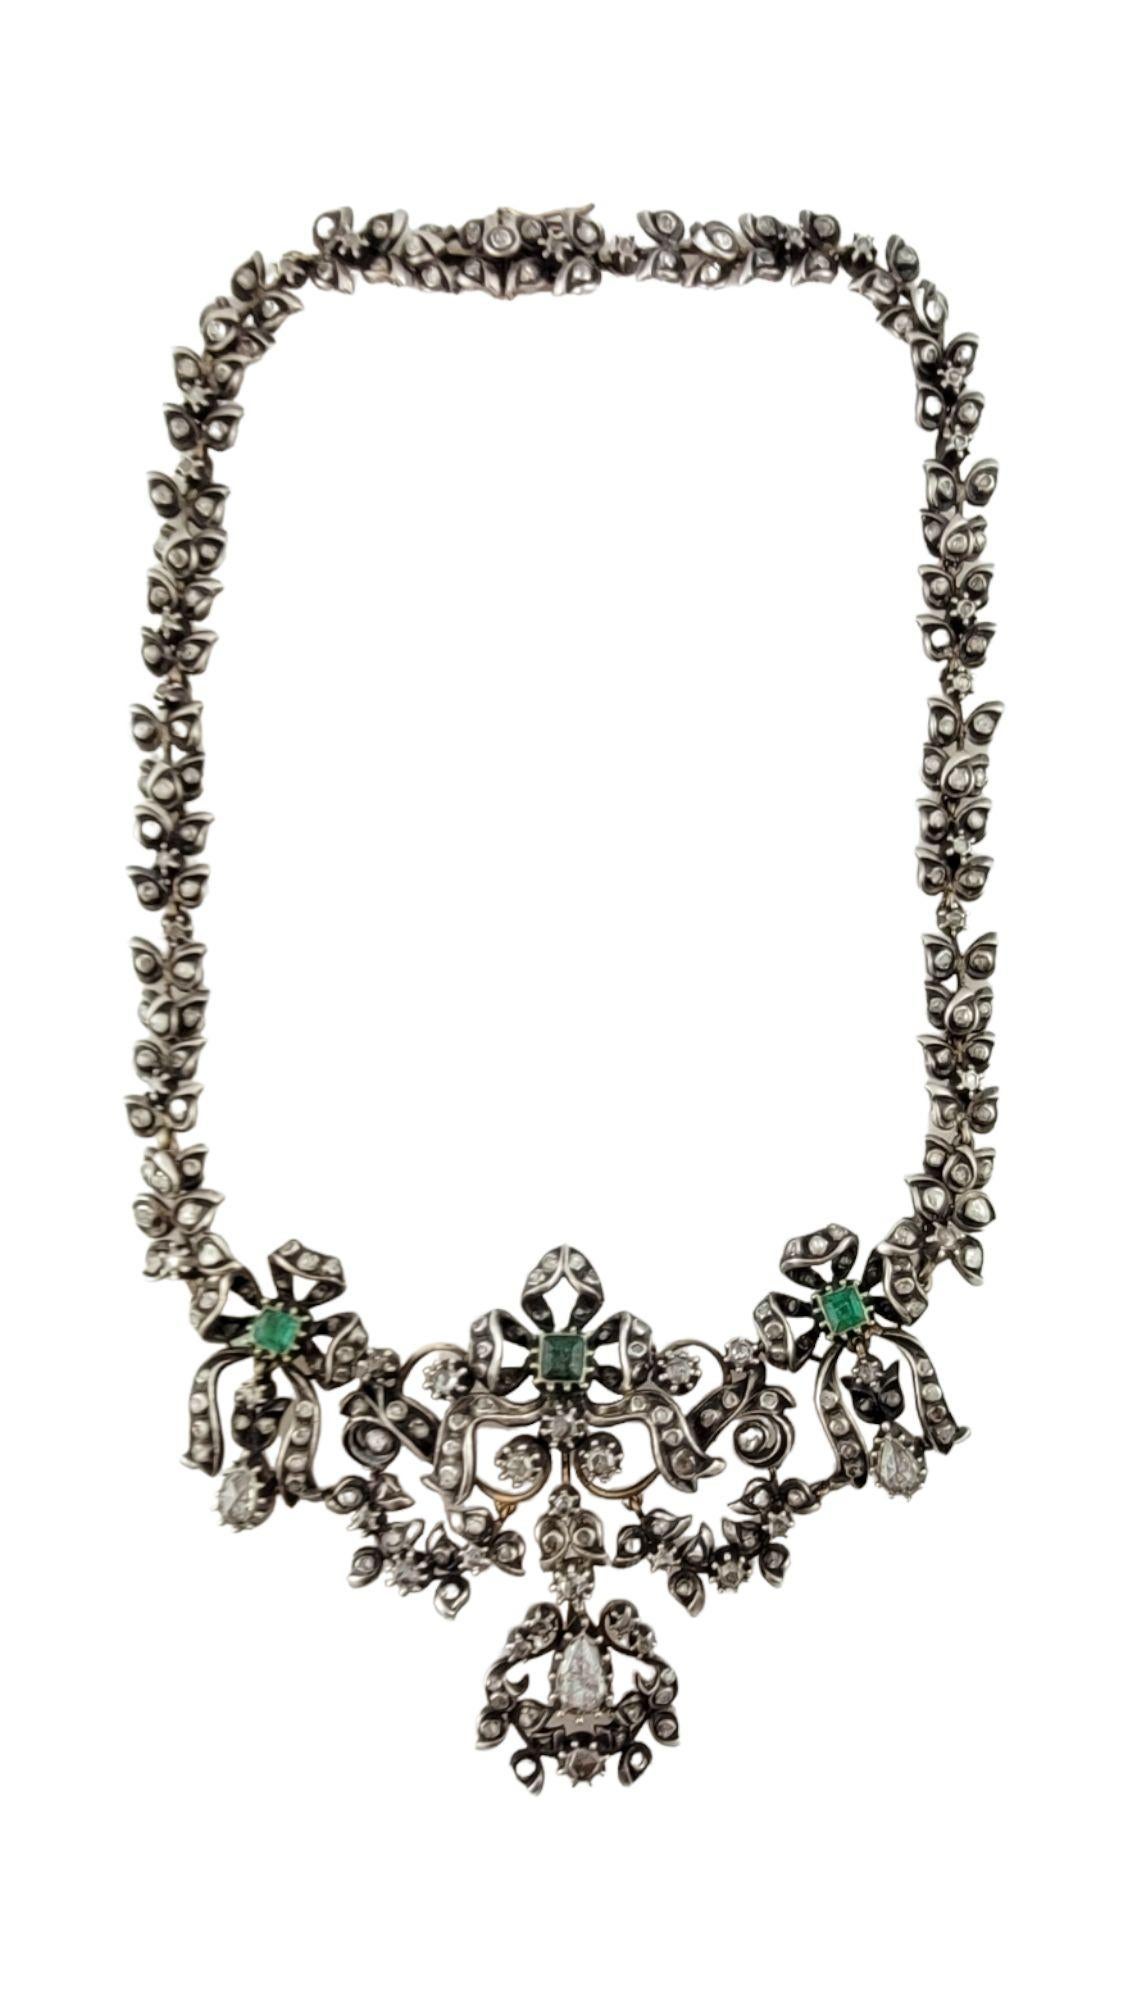 Georgisches Silber über Gold Diamant und Smaragd Halsband / Choker Halskette

Diese atemberaubende Halskette stammt aus der georgianischen Ära des 18. Jahrhunderts. Diese Halskette wurde von einer wohlhabenden georgischen Dame am Abend